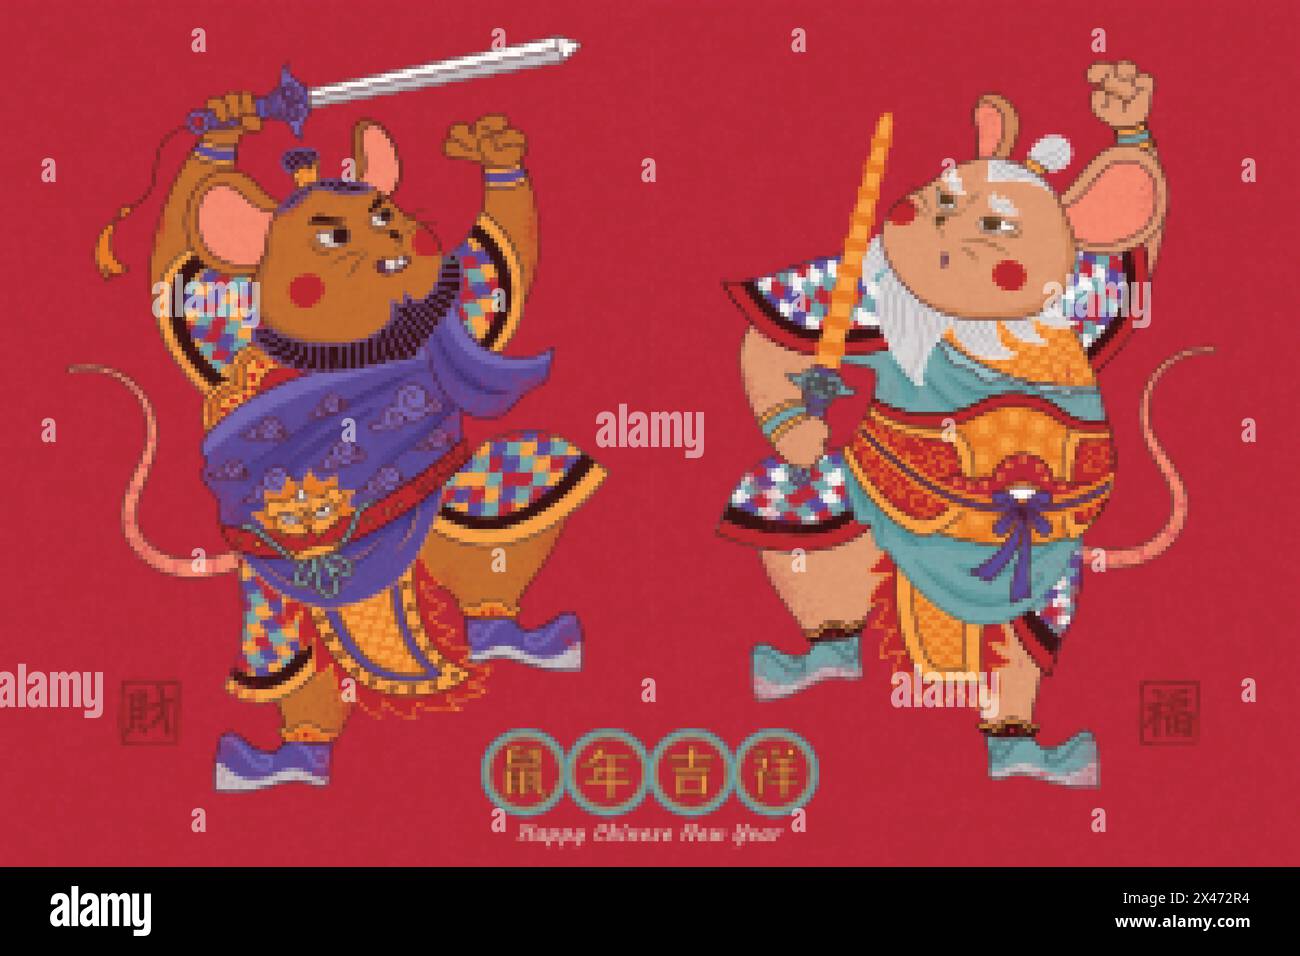 Süße Mäuse Türgötter mit Schwert auf rotem Hintergrund, vielversprechend und Glück in chinesischen Worten geschrieben Stock Vektor